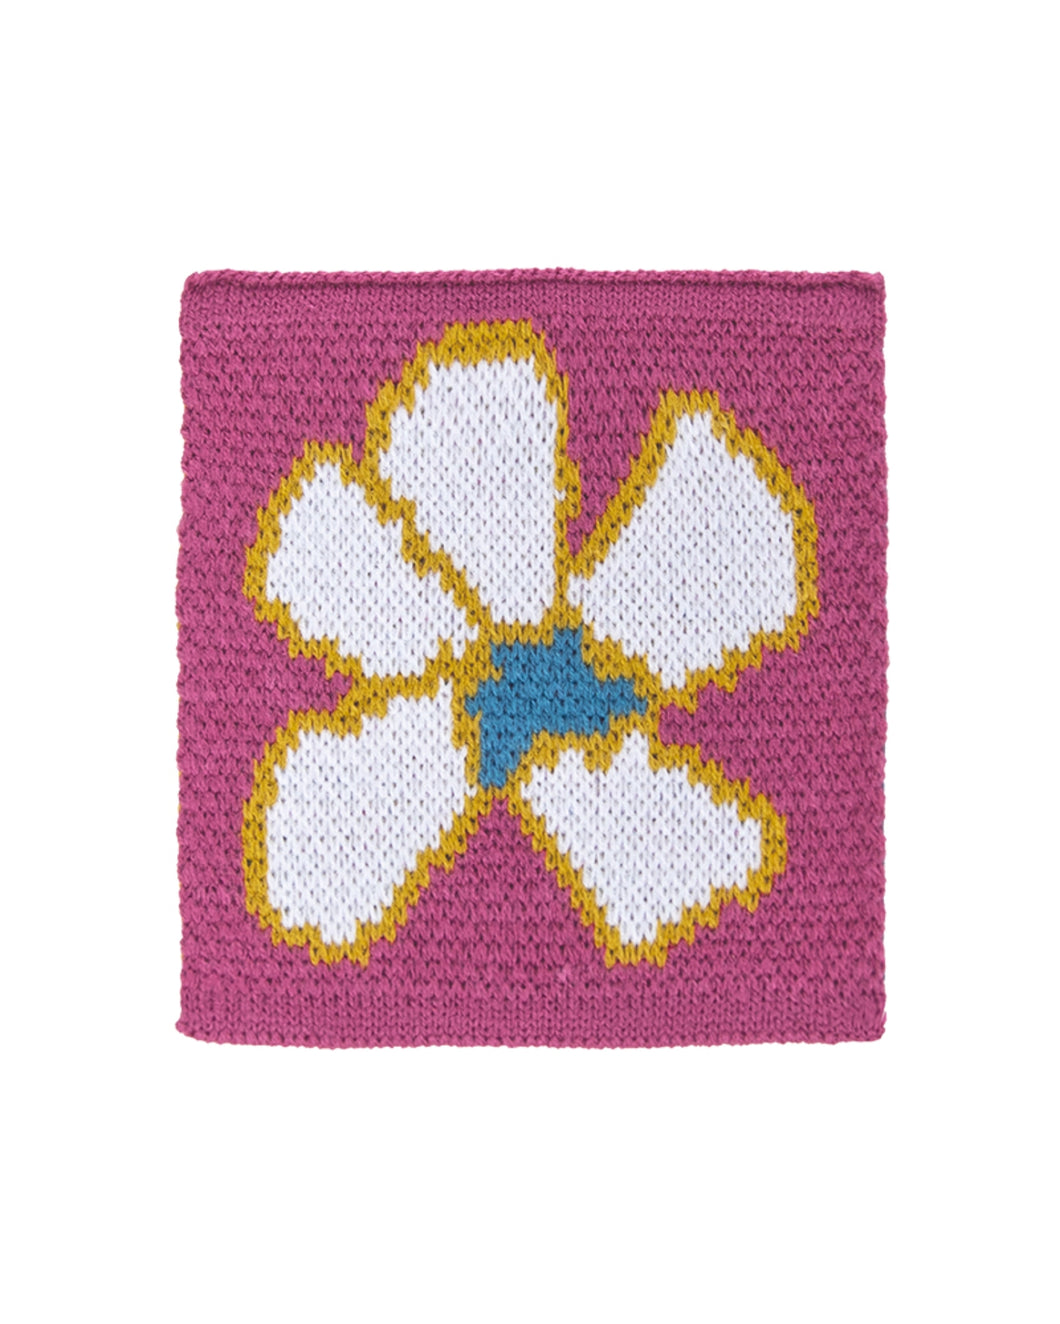 UNALLOYED Flower Knit Coaster Pink